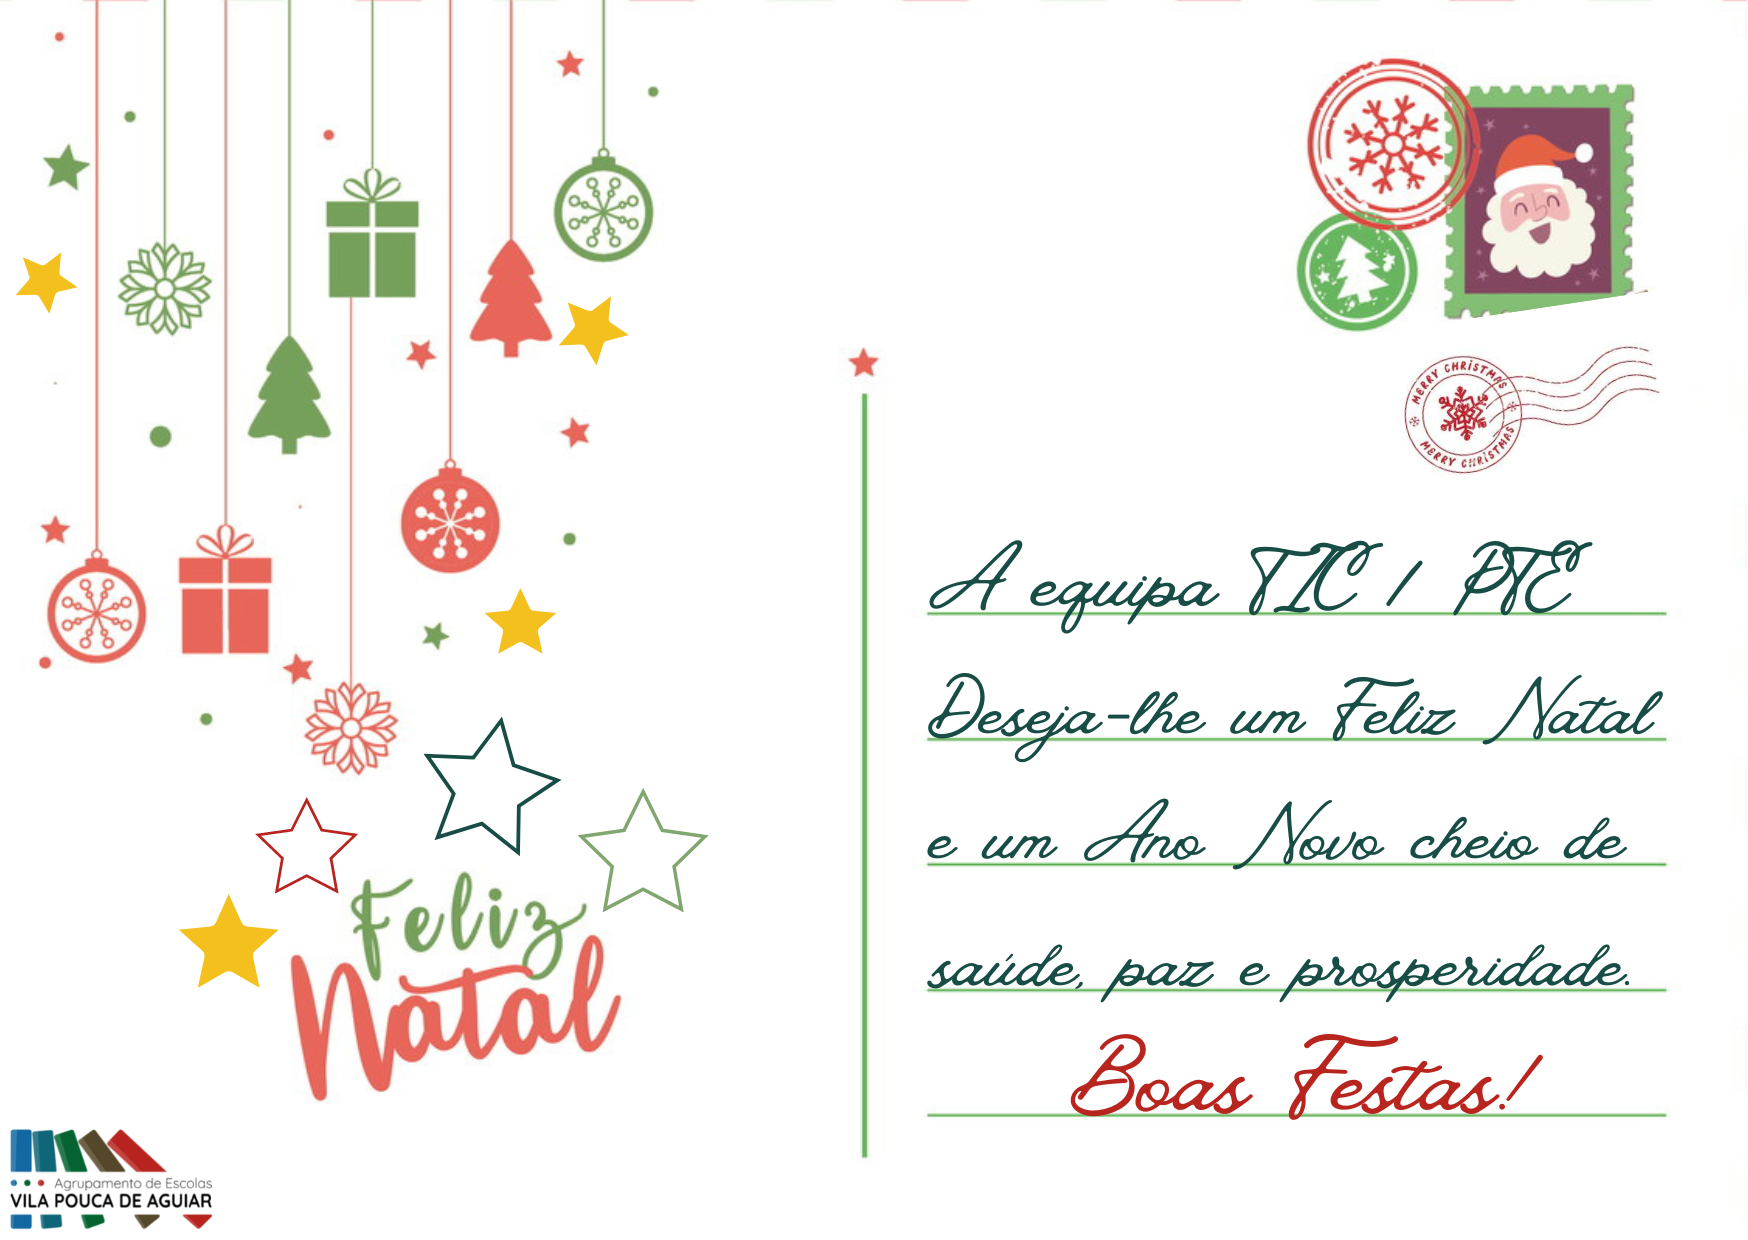 🎅🏻A Equipa TIC / PTE deseja-lhe um Feliz Natal e um Ano Novo cheio de saúde, paz e prosperidade...